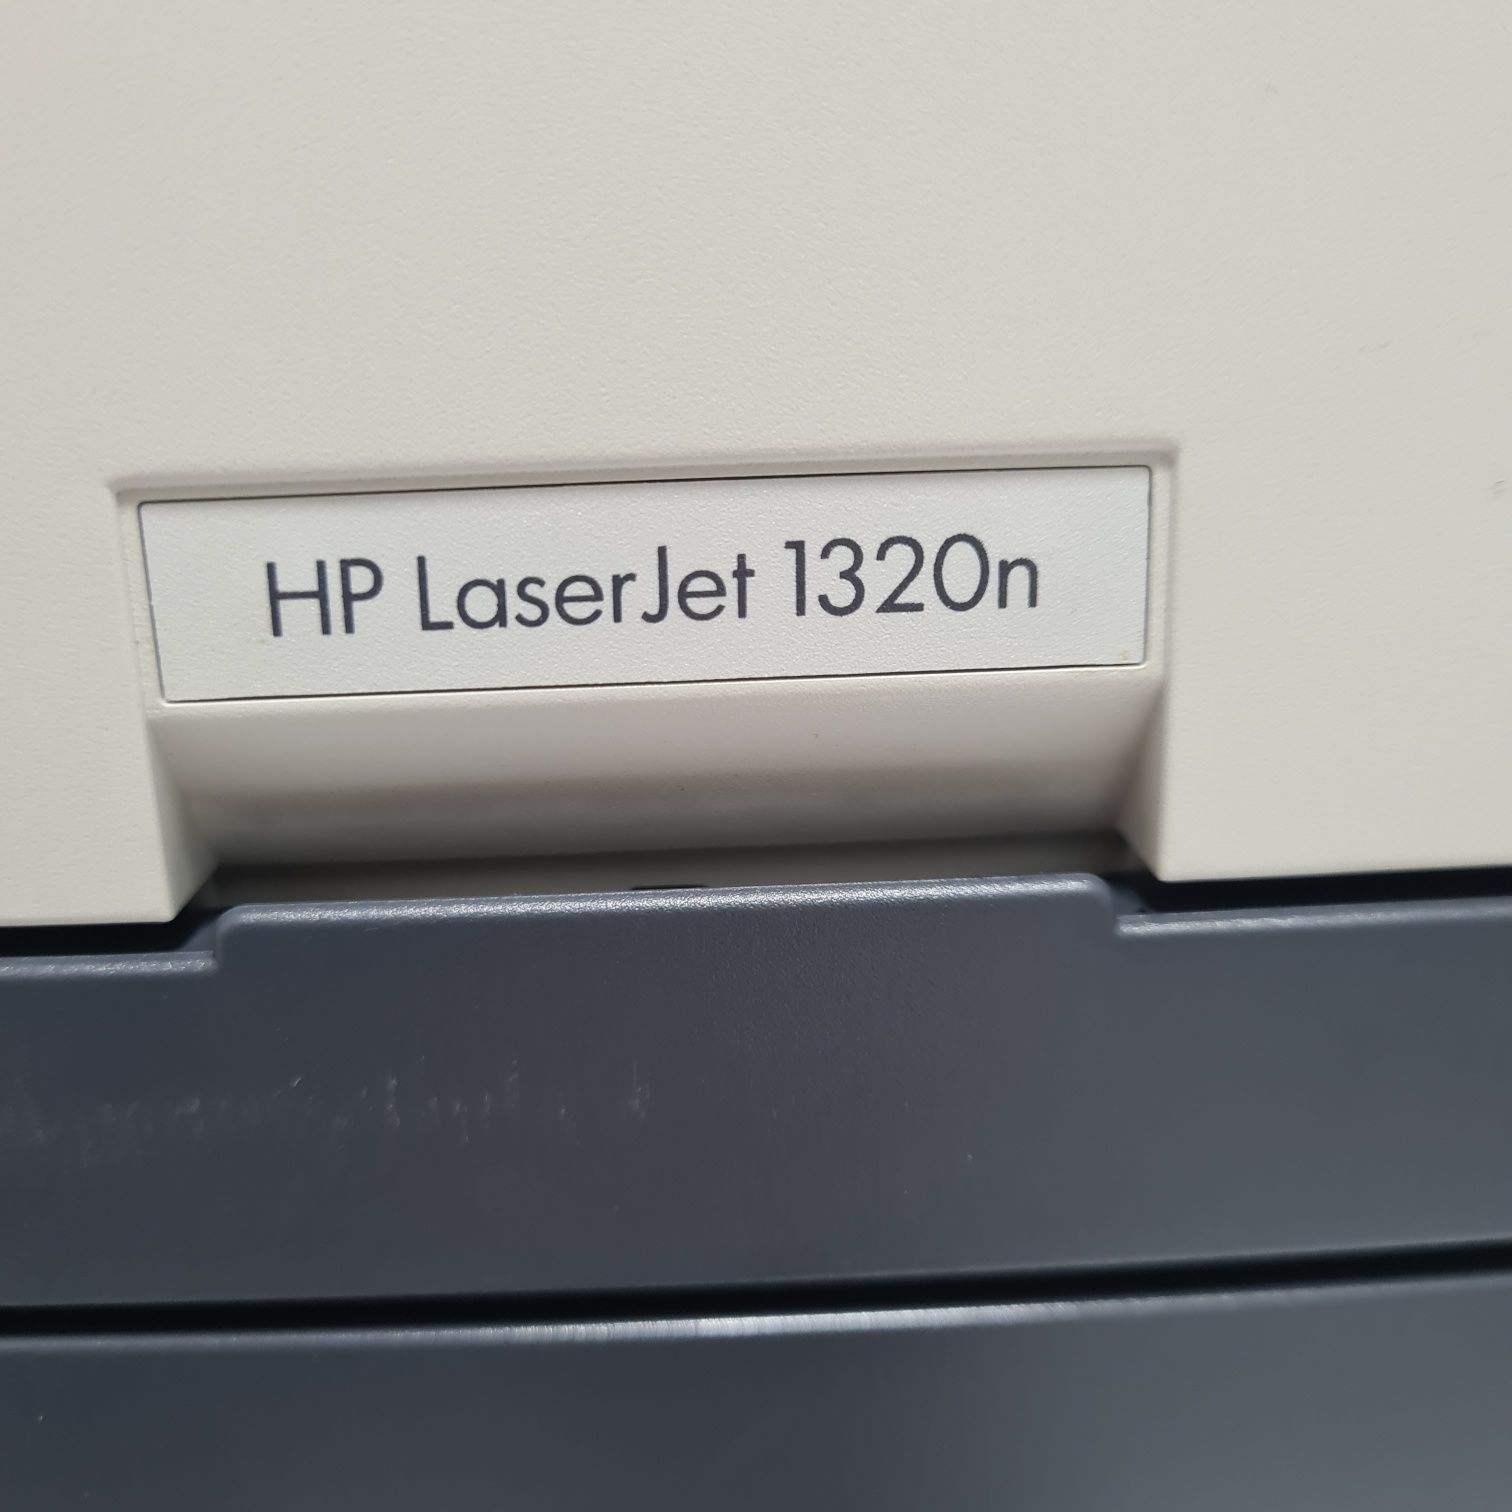 Вечный двустронний сетевой лазерный принтер HP LJ1320n. Гарантия